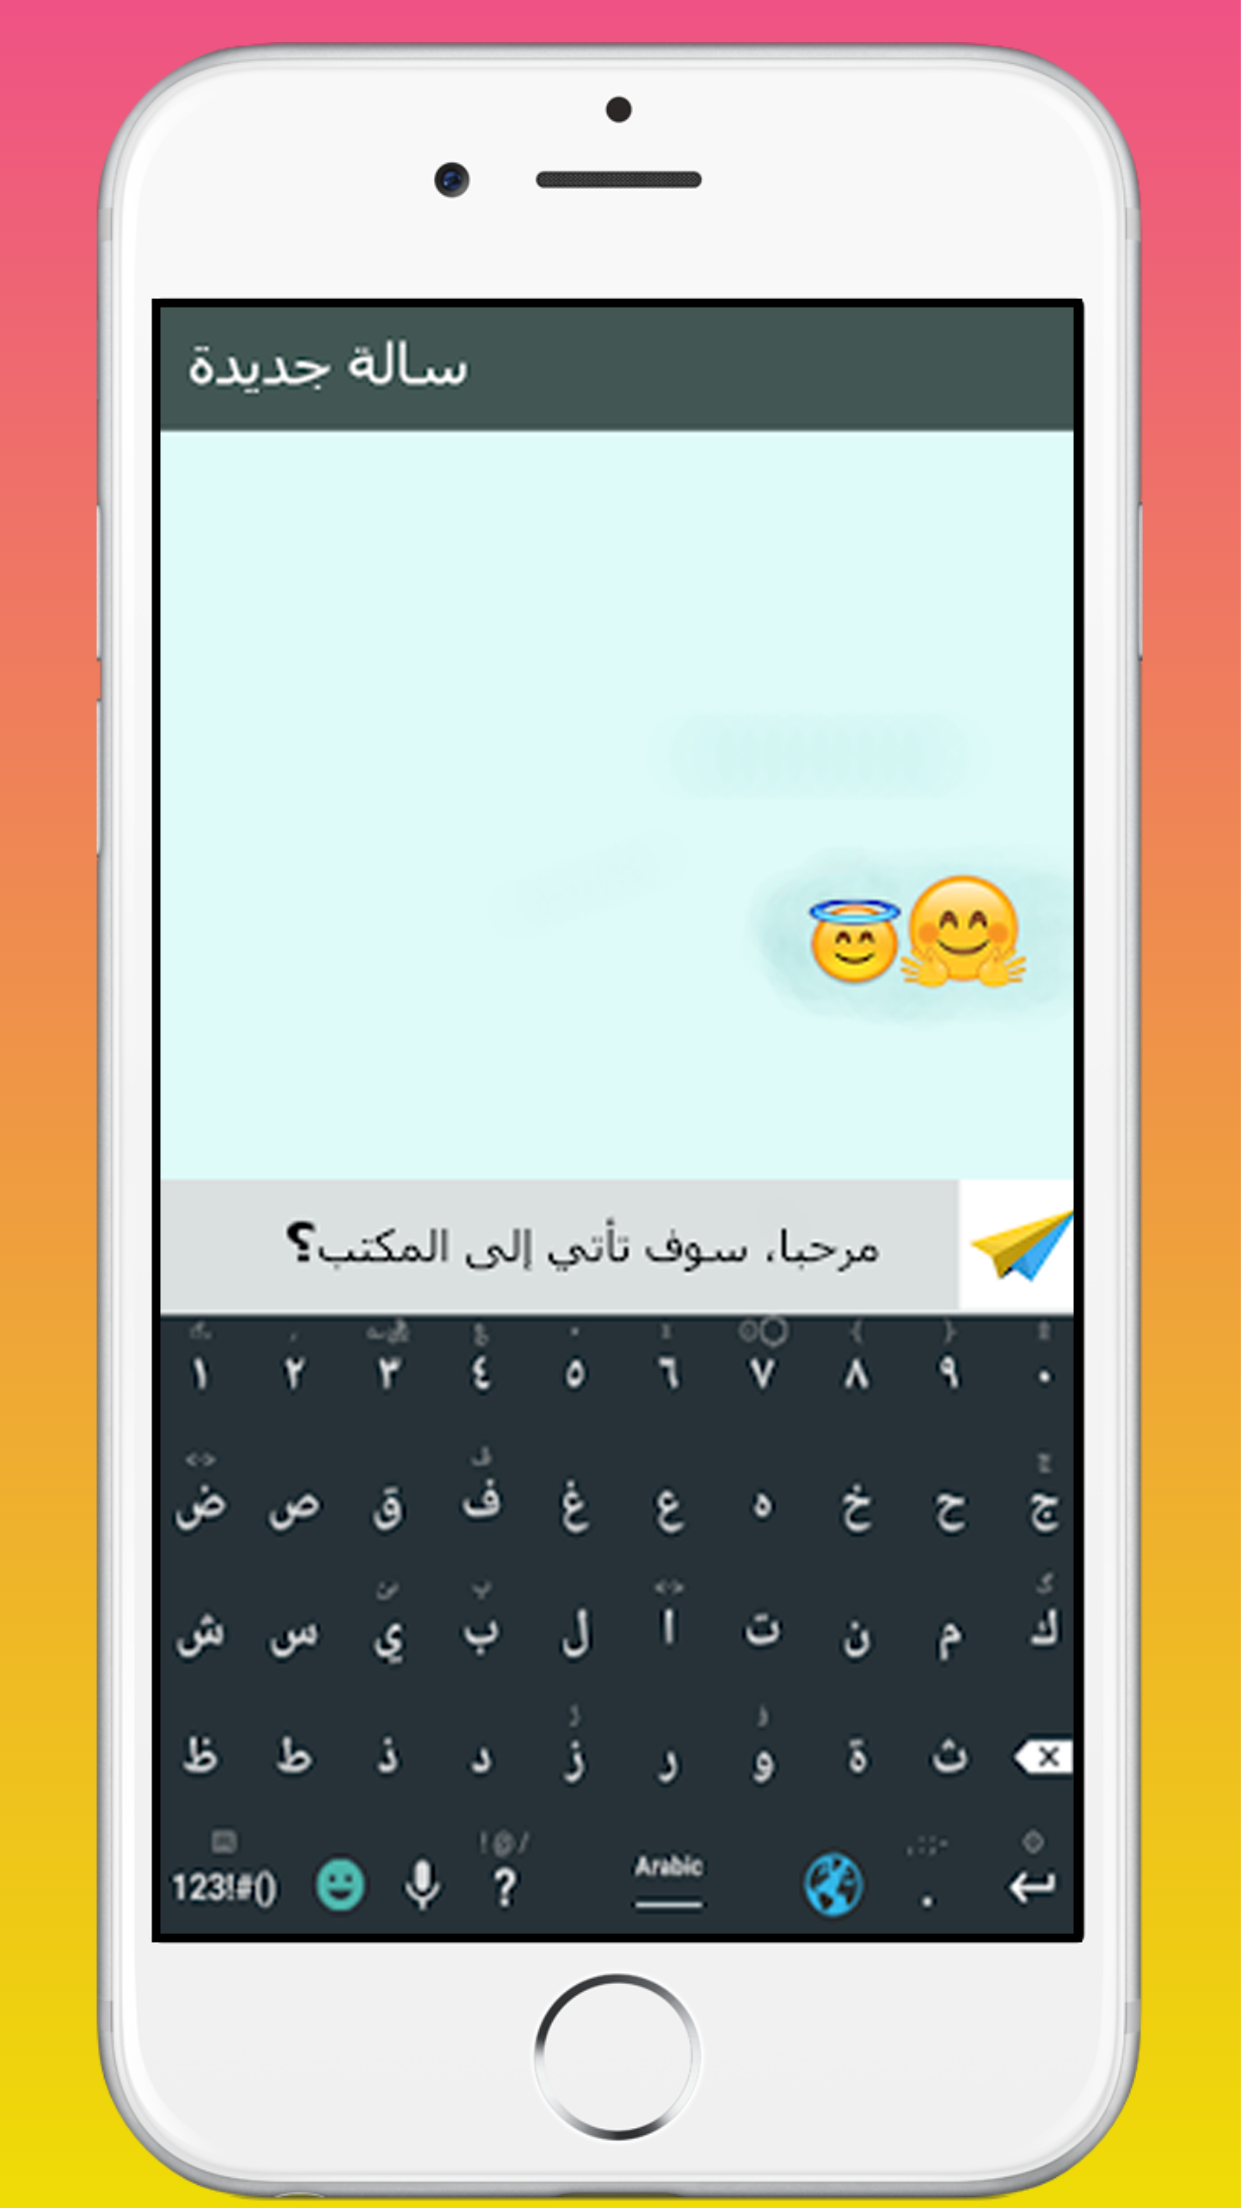 Clavier Arabe Français Anglais Facil Pour Android APK 32.7 for Android –  Download Clavier Arabe Français Anglais Facil Pour Android APK Latest  Version from APKFab.com